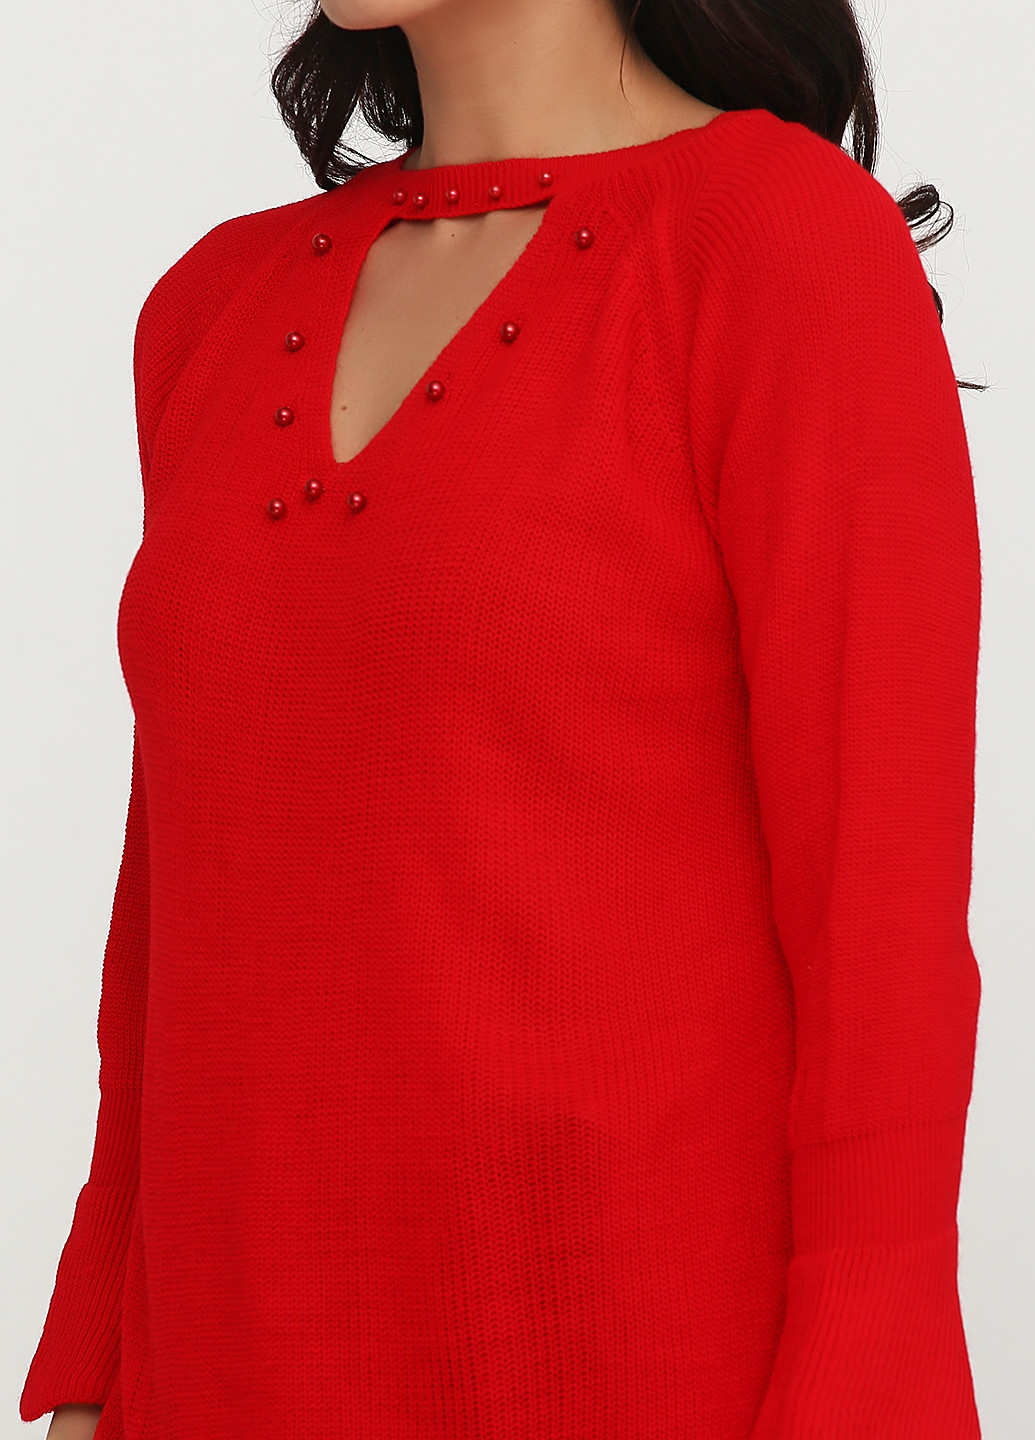 Красный демисезонный пуловер пуловер Babylon